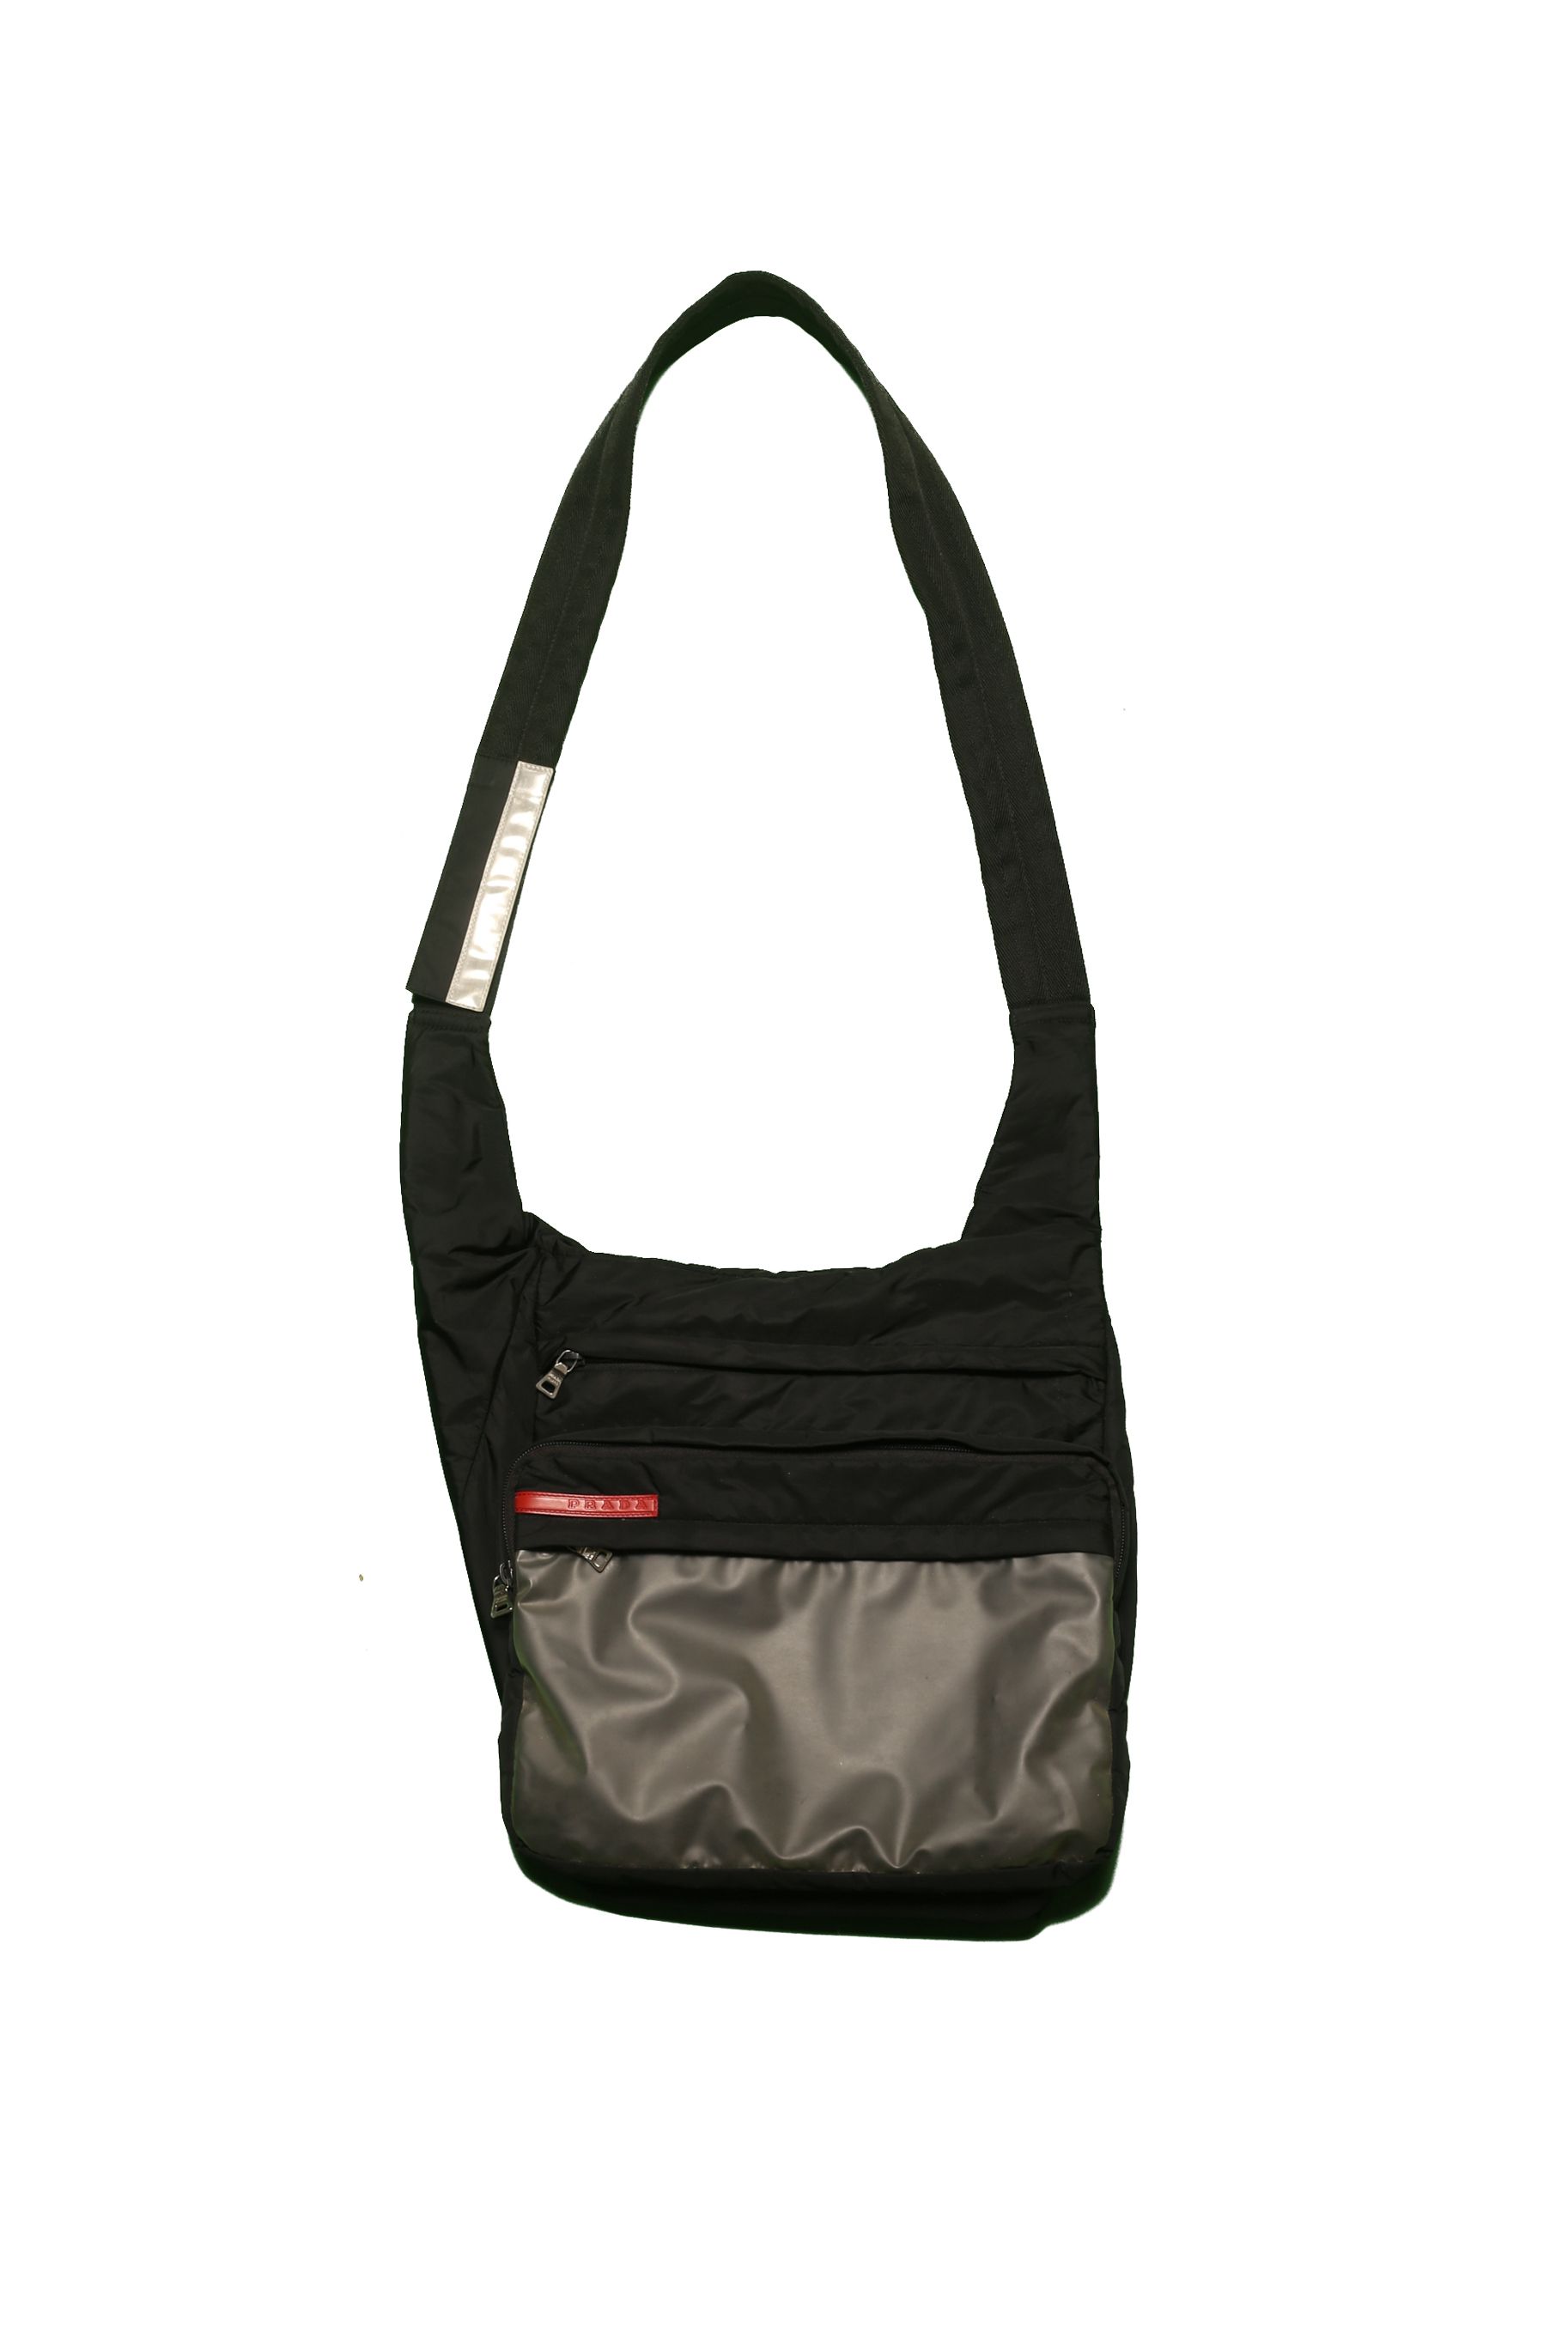 Prada Prada Transparent Shoulder Bag Size ONE SIZE - 1 Preview